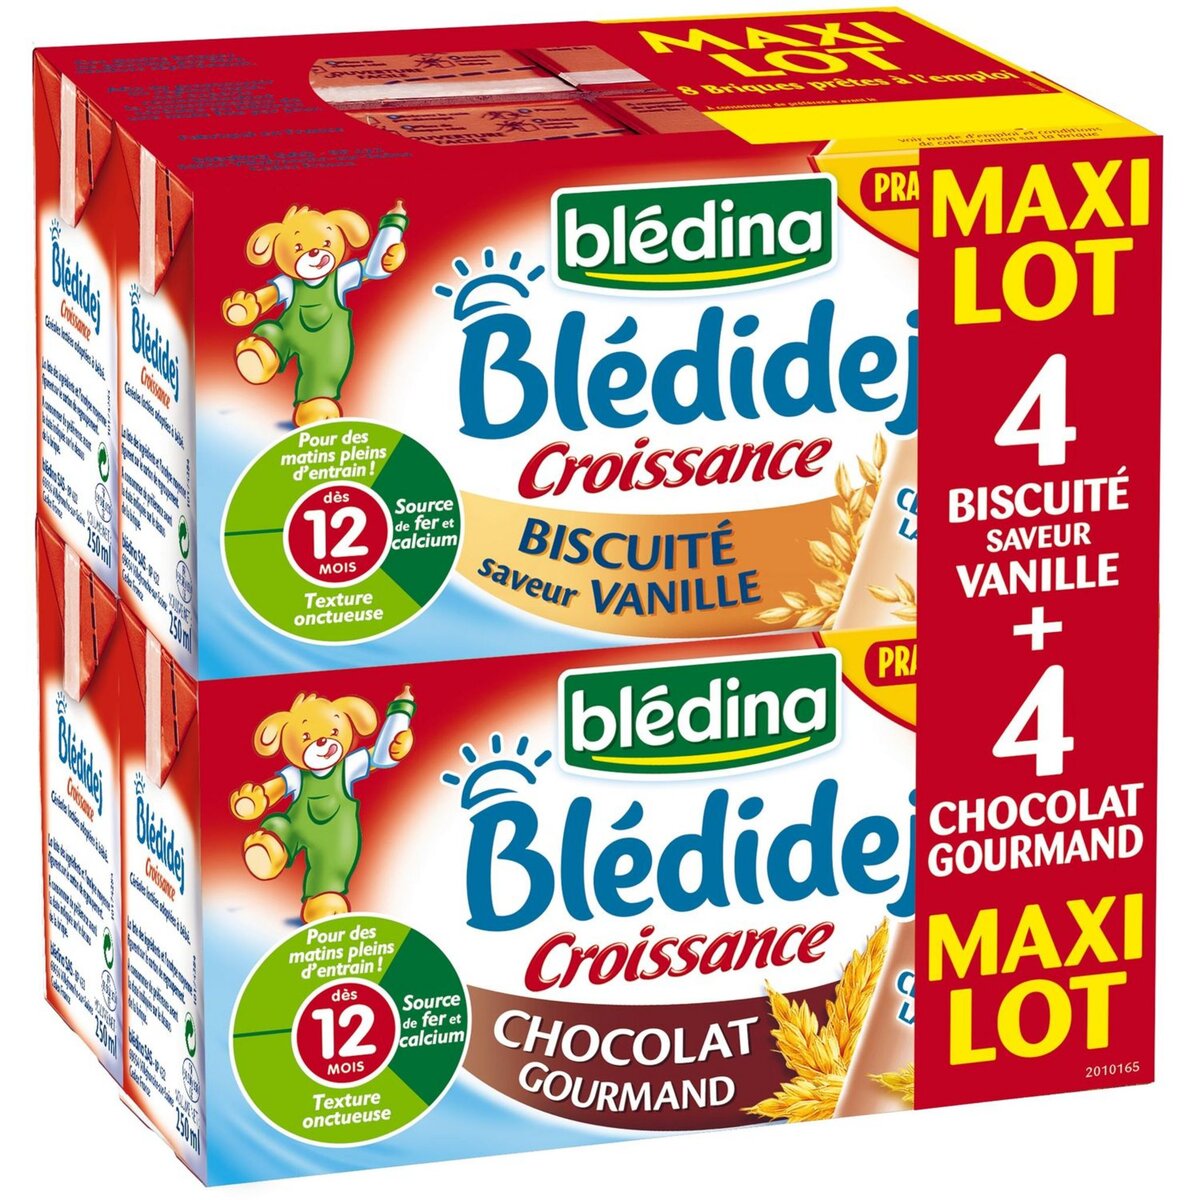 Blédidej - Croissance Biscuité Vanille Dès 12 mois - Blédina